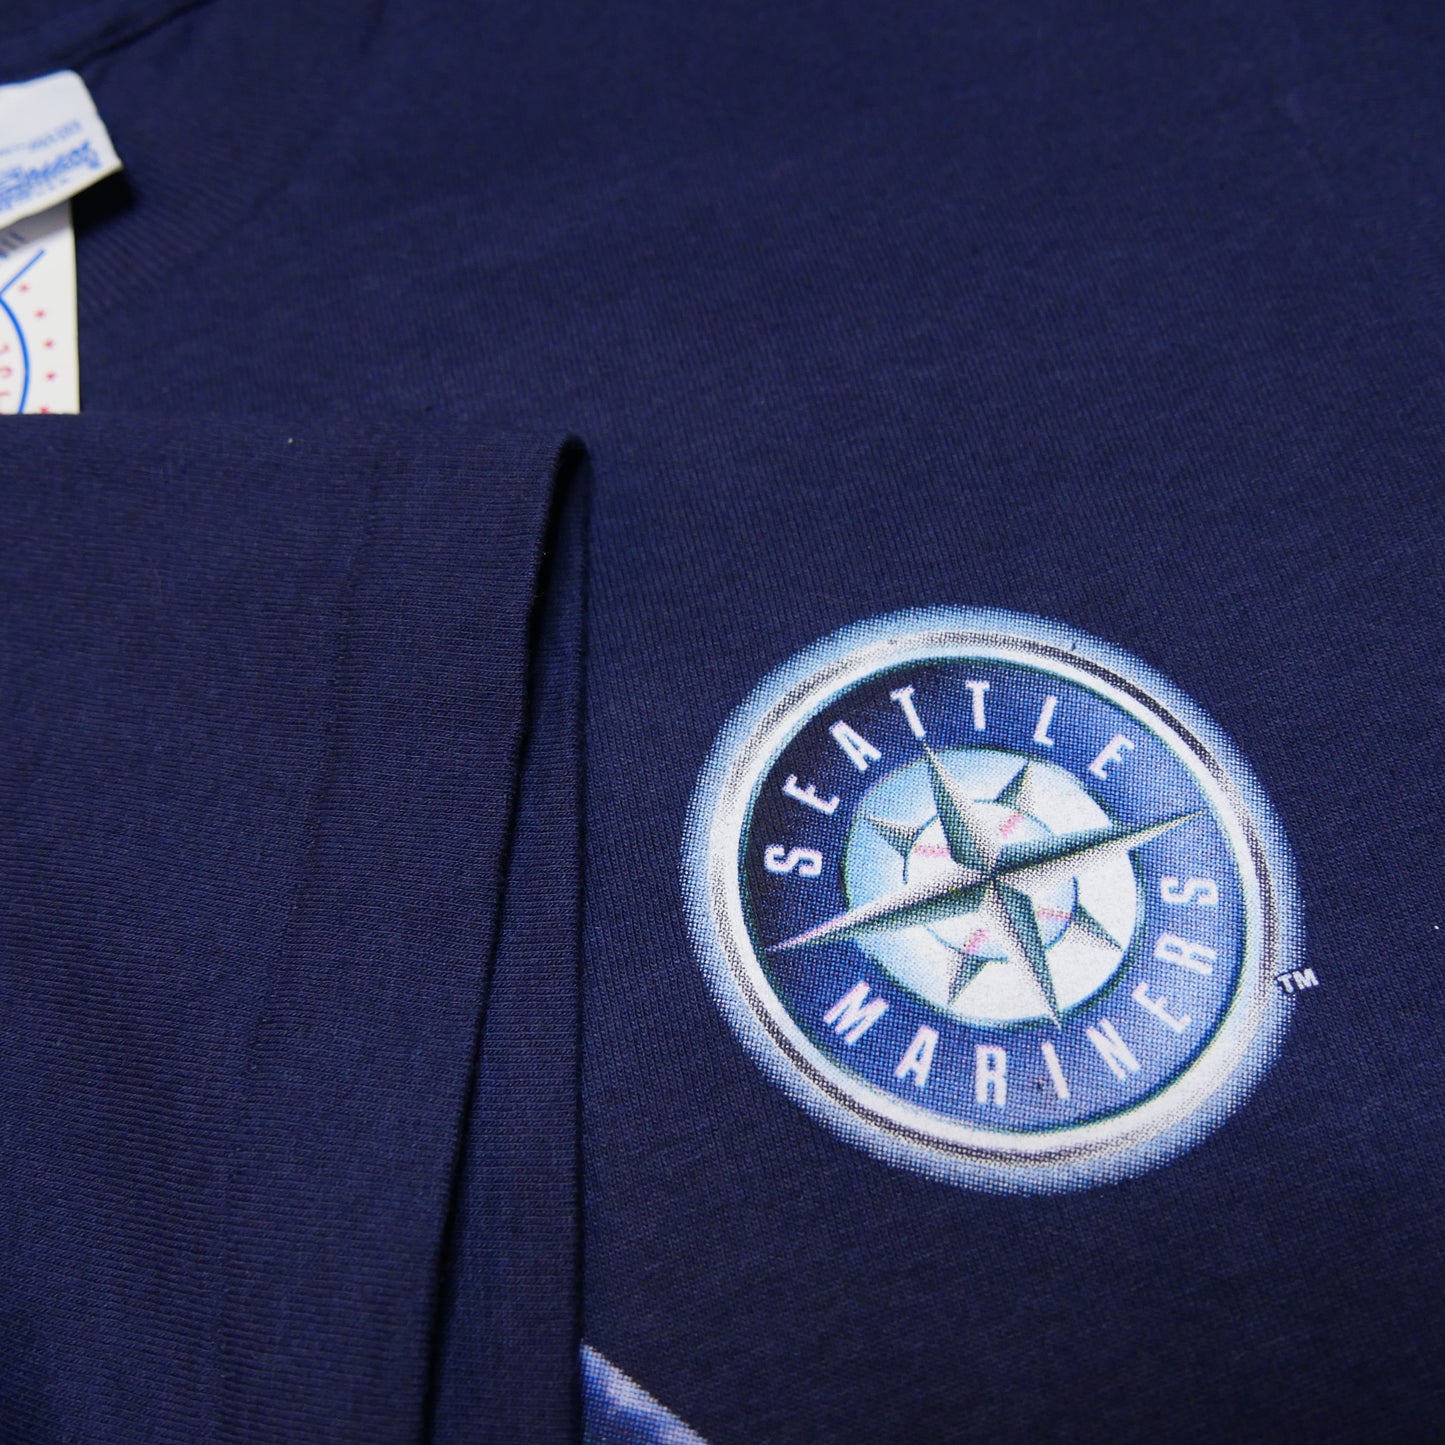 Ken Griffey Seattle Mariners Baseball Shirt - Large